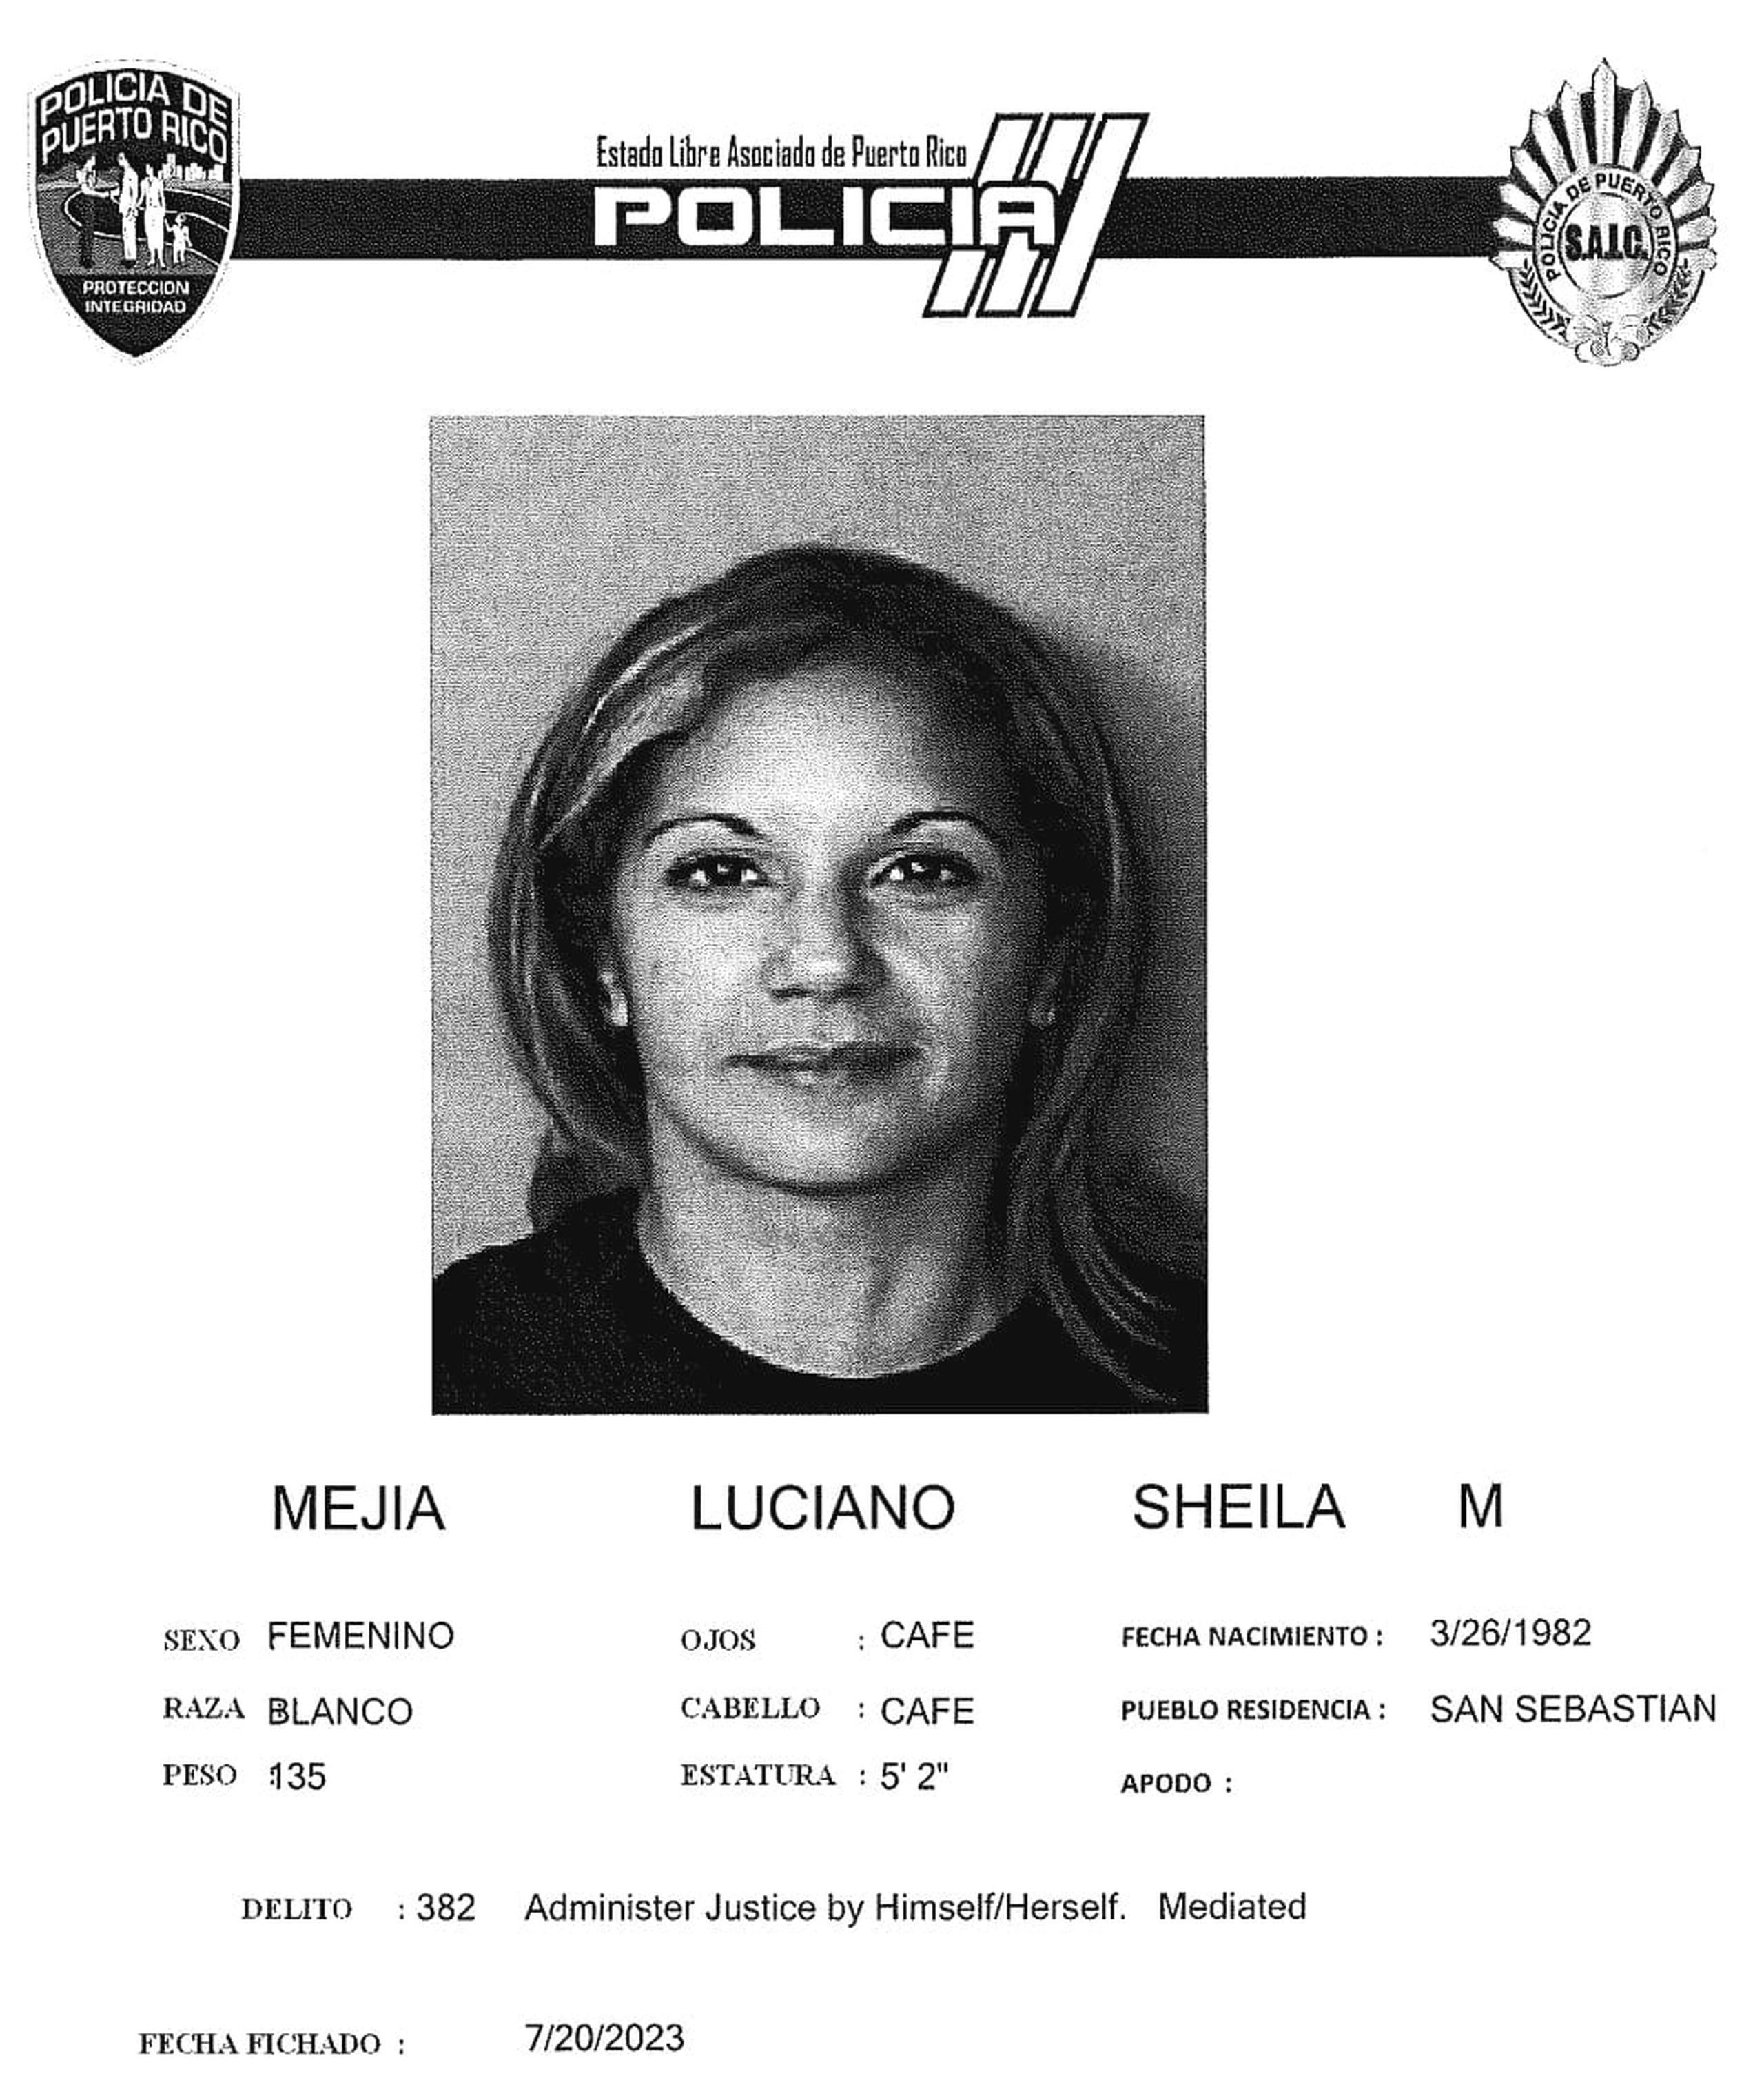 Sheila M. Mejía Luciano enfrenta cargos por incidente durante una manifestación en La Parguera, Lajas.